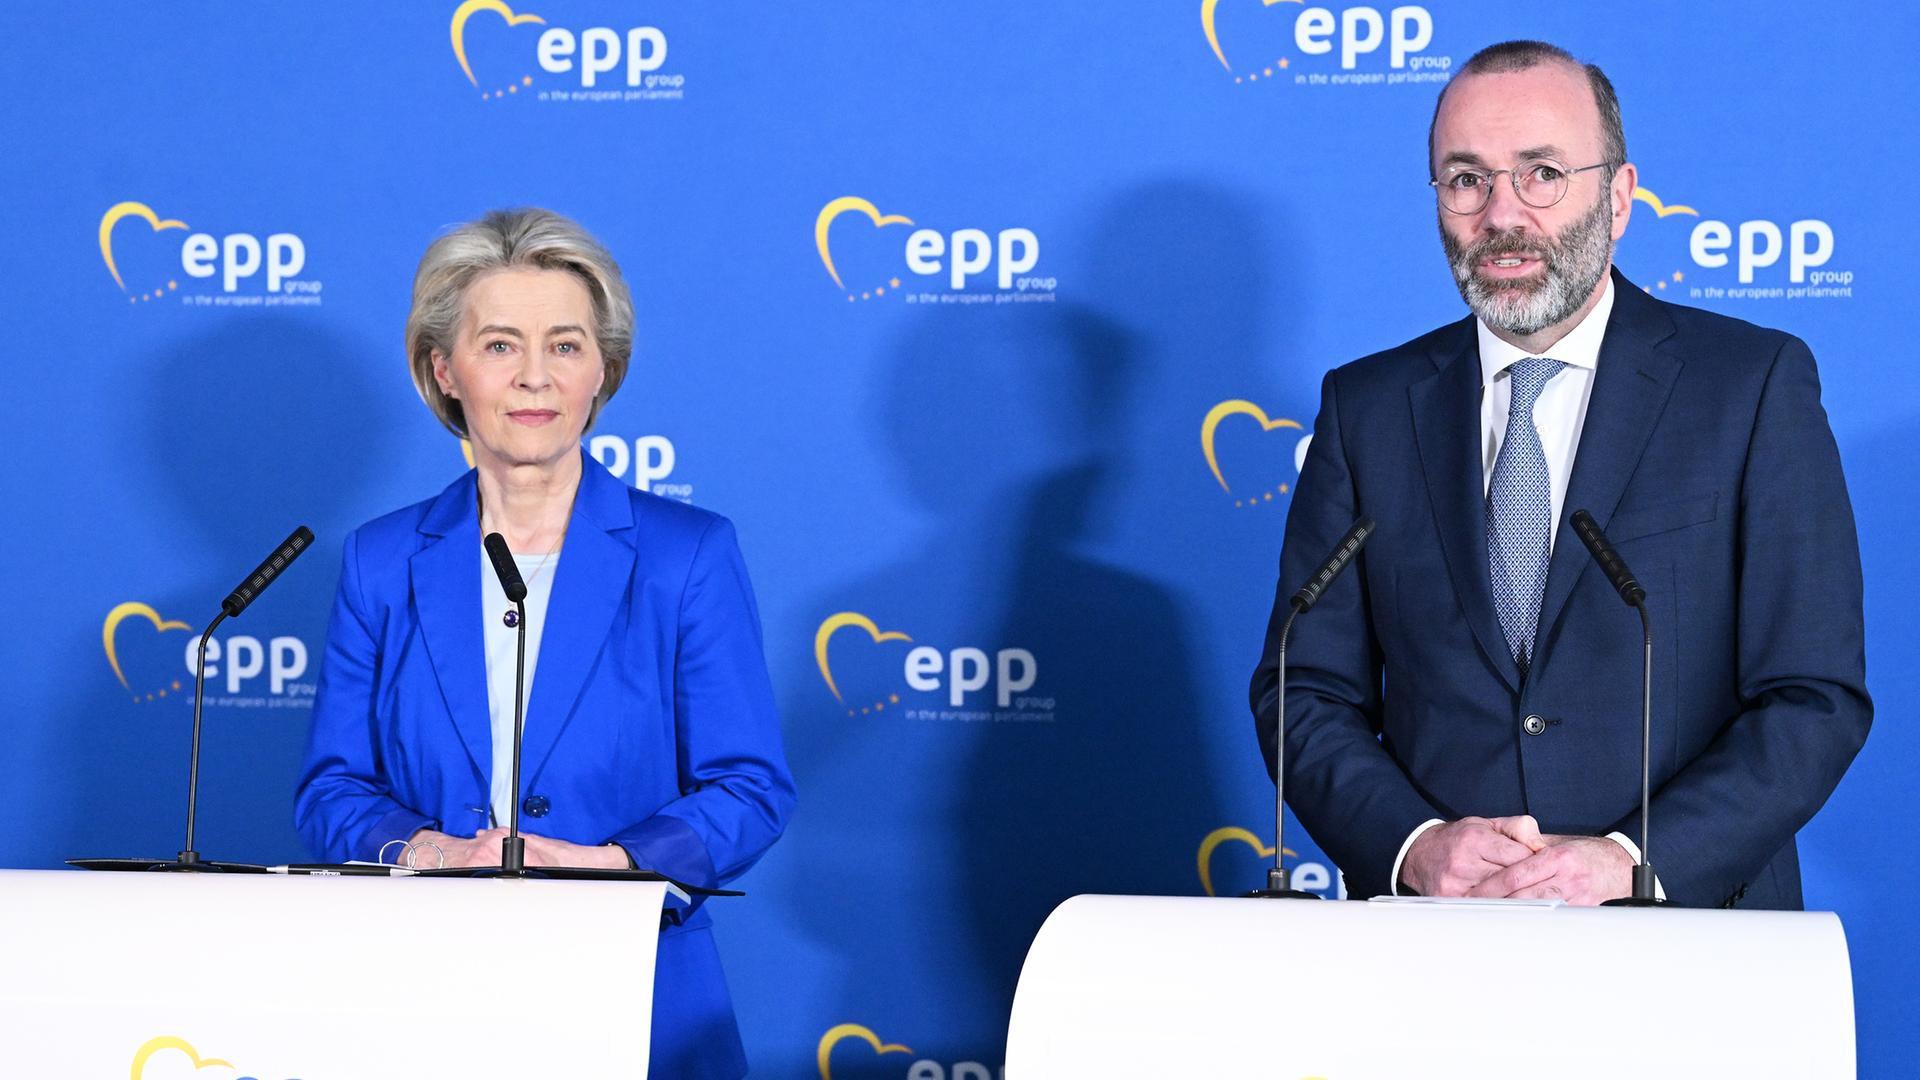 Die Präsidentin der Europäischen Kommission Ursula von der Leyen und der Vorsitzende der Europäischen Volkspartei (EVP) Manfred Weber stehen bei einer gemeinsamen Pressekonferenz im Europäischen Parlament am 21. Februar 2023 in Brüssel, Belgien.